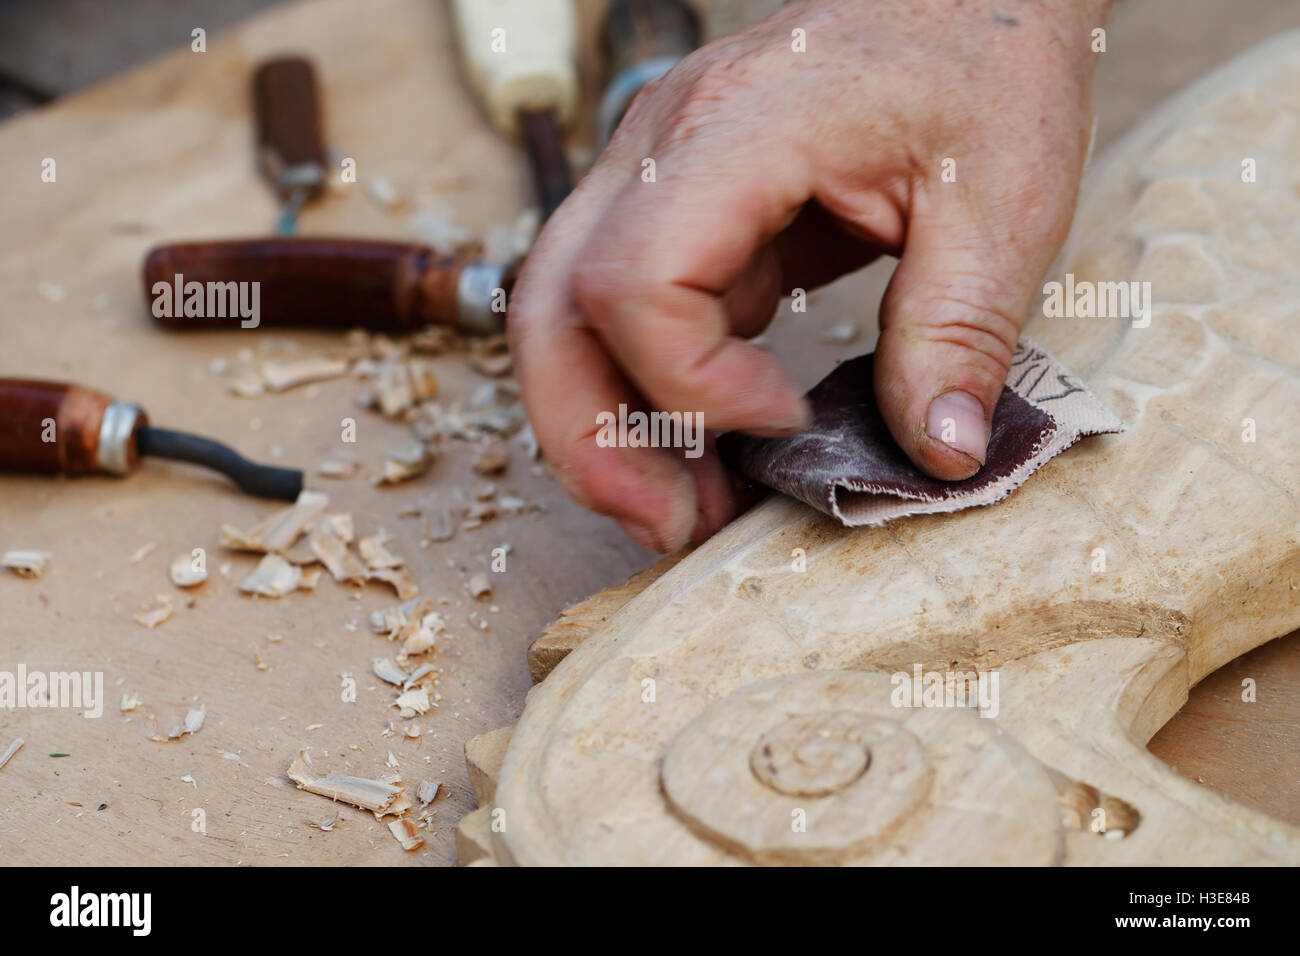 Un sculture in legno, gli strumenti e i processi di lavoro closeup Foto Stock